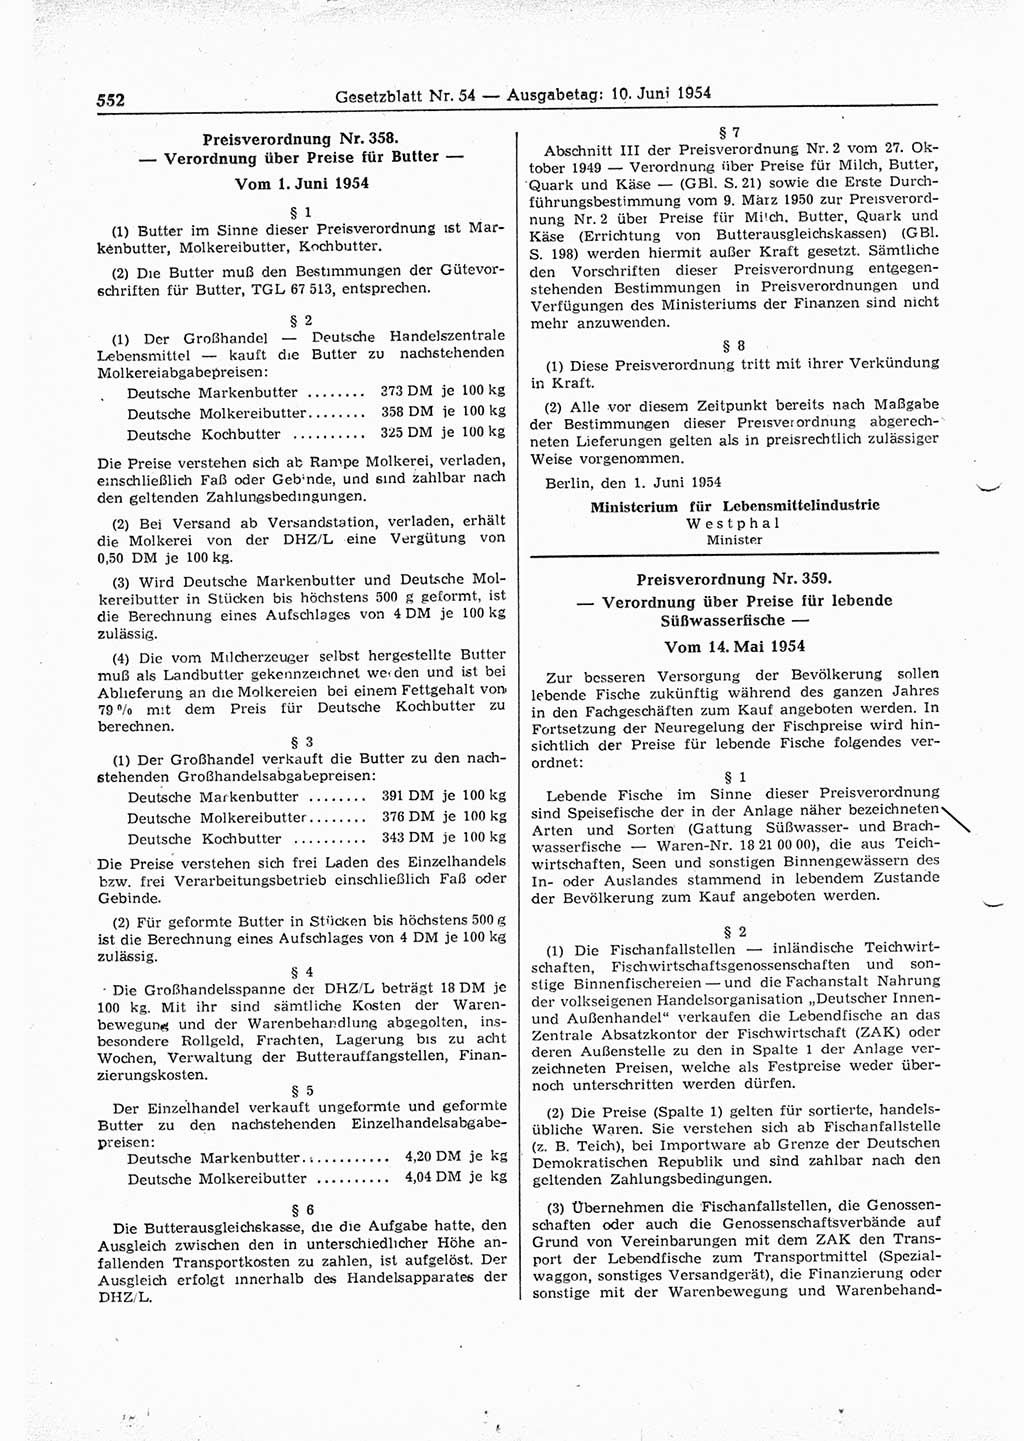 Gesetzblatt (GBl.) der Deutschen Demokratischen Republik (DDR) 1954, Seite 552 (GBl. DDR 1954, S. 552)